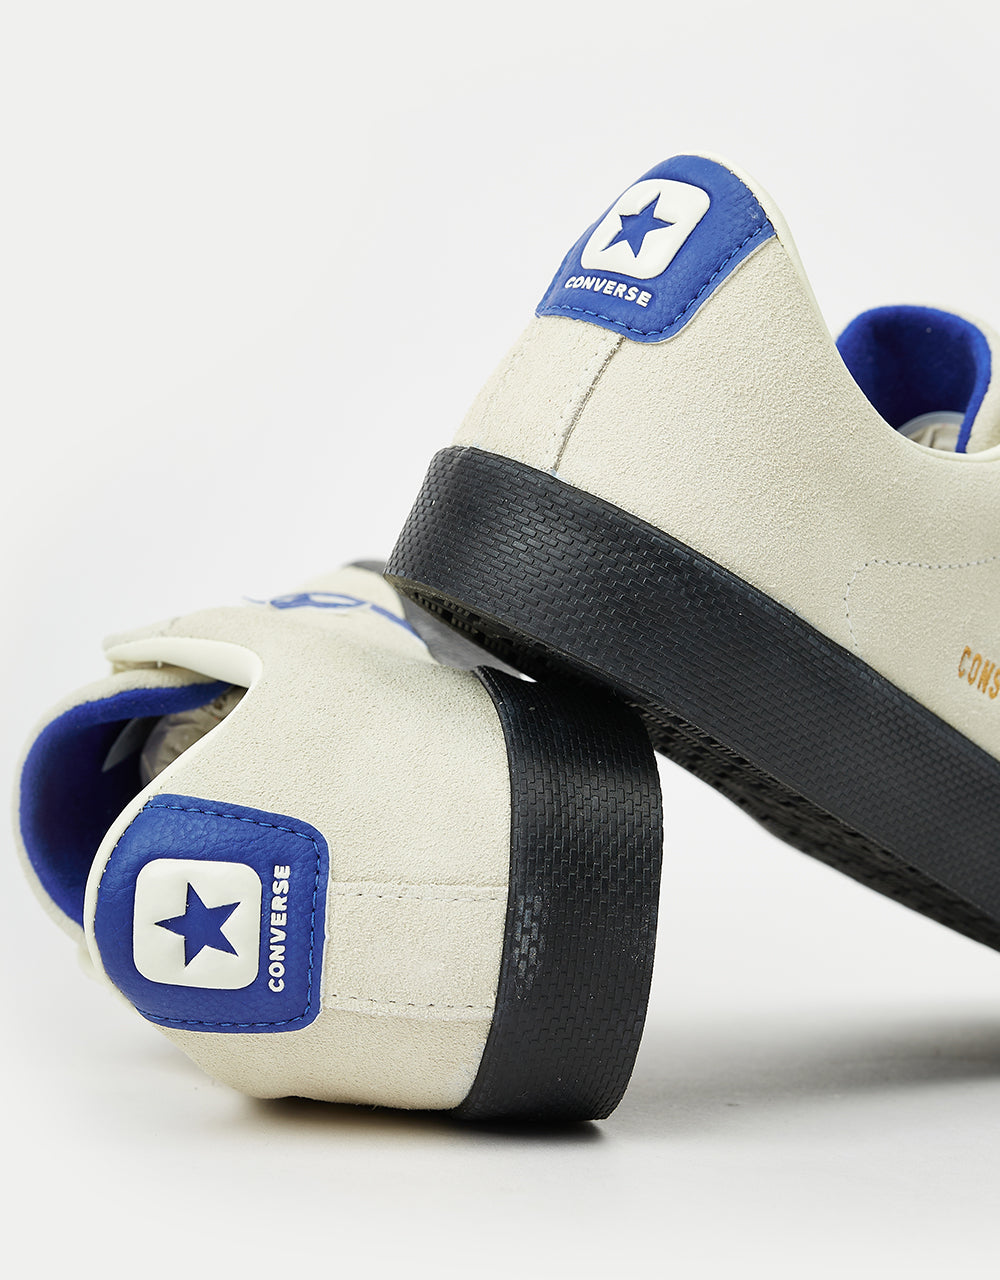 Converse PL Vulc Pro Skate Shoes - Egret/Blue/Black